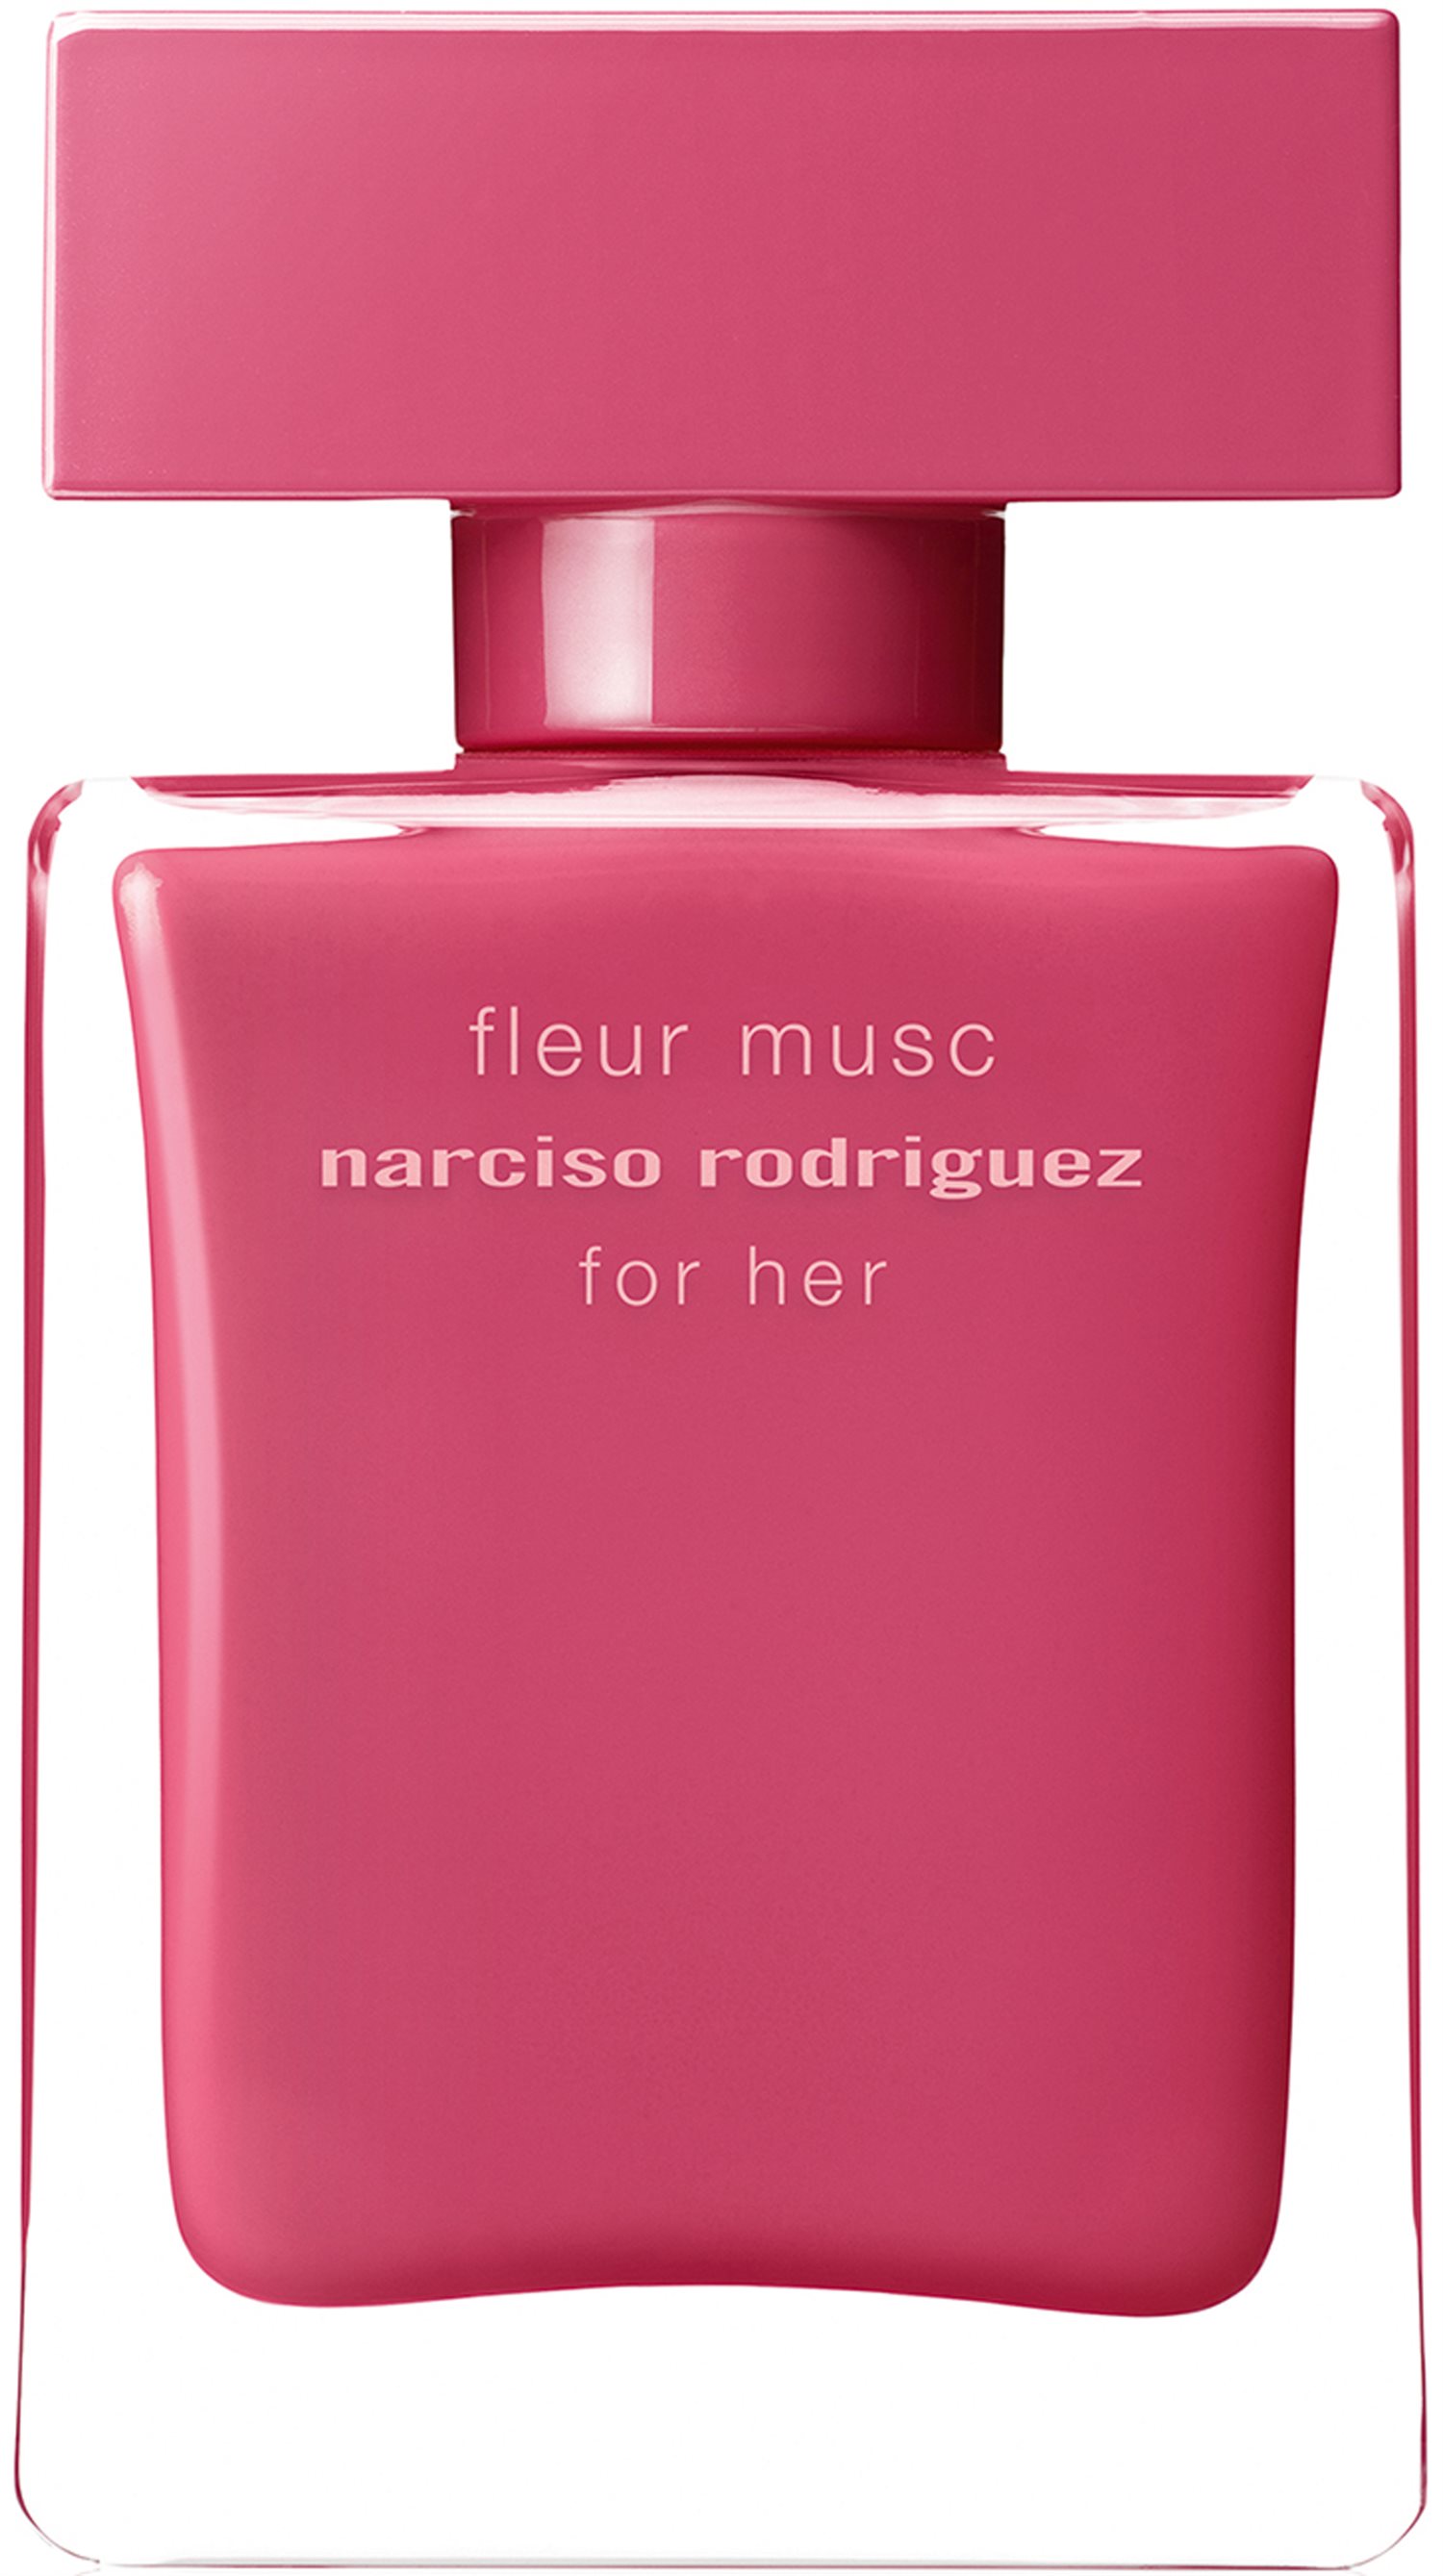 Аромат narciso rodriguez. Fleur Musc Narciso Rodriguez for her. Narciso Rodriguez for her fleur Musk. Narciso Rodriguez fleur Musc for her EDT, 100 ml. Narciso Rodriguez for her fleur Musc EDP 30ml.